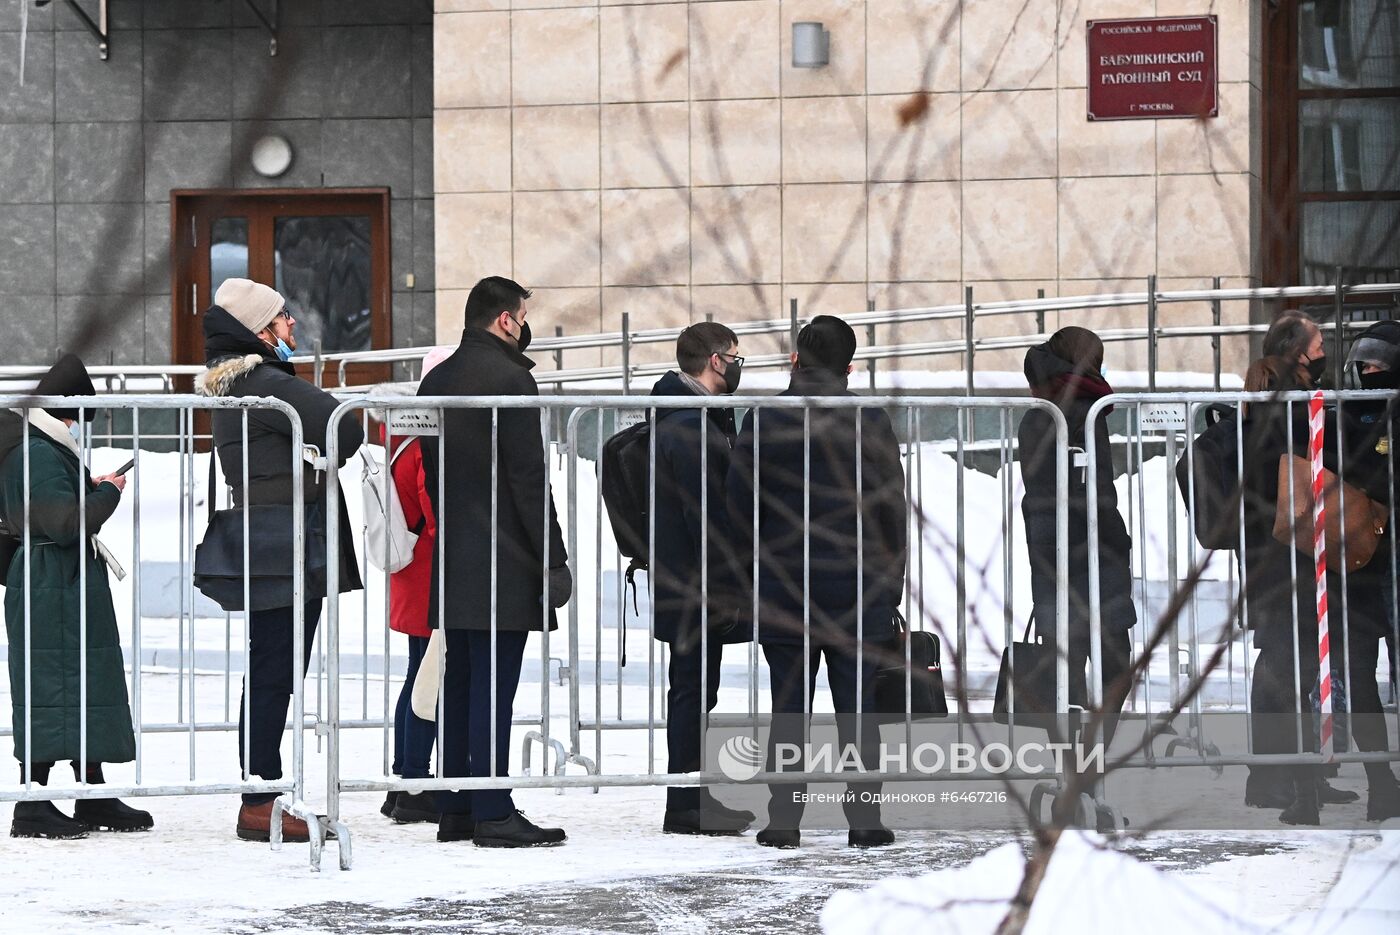 Заседание суда по А. Навальному